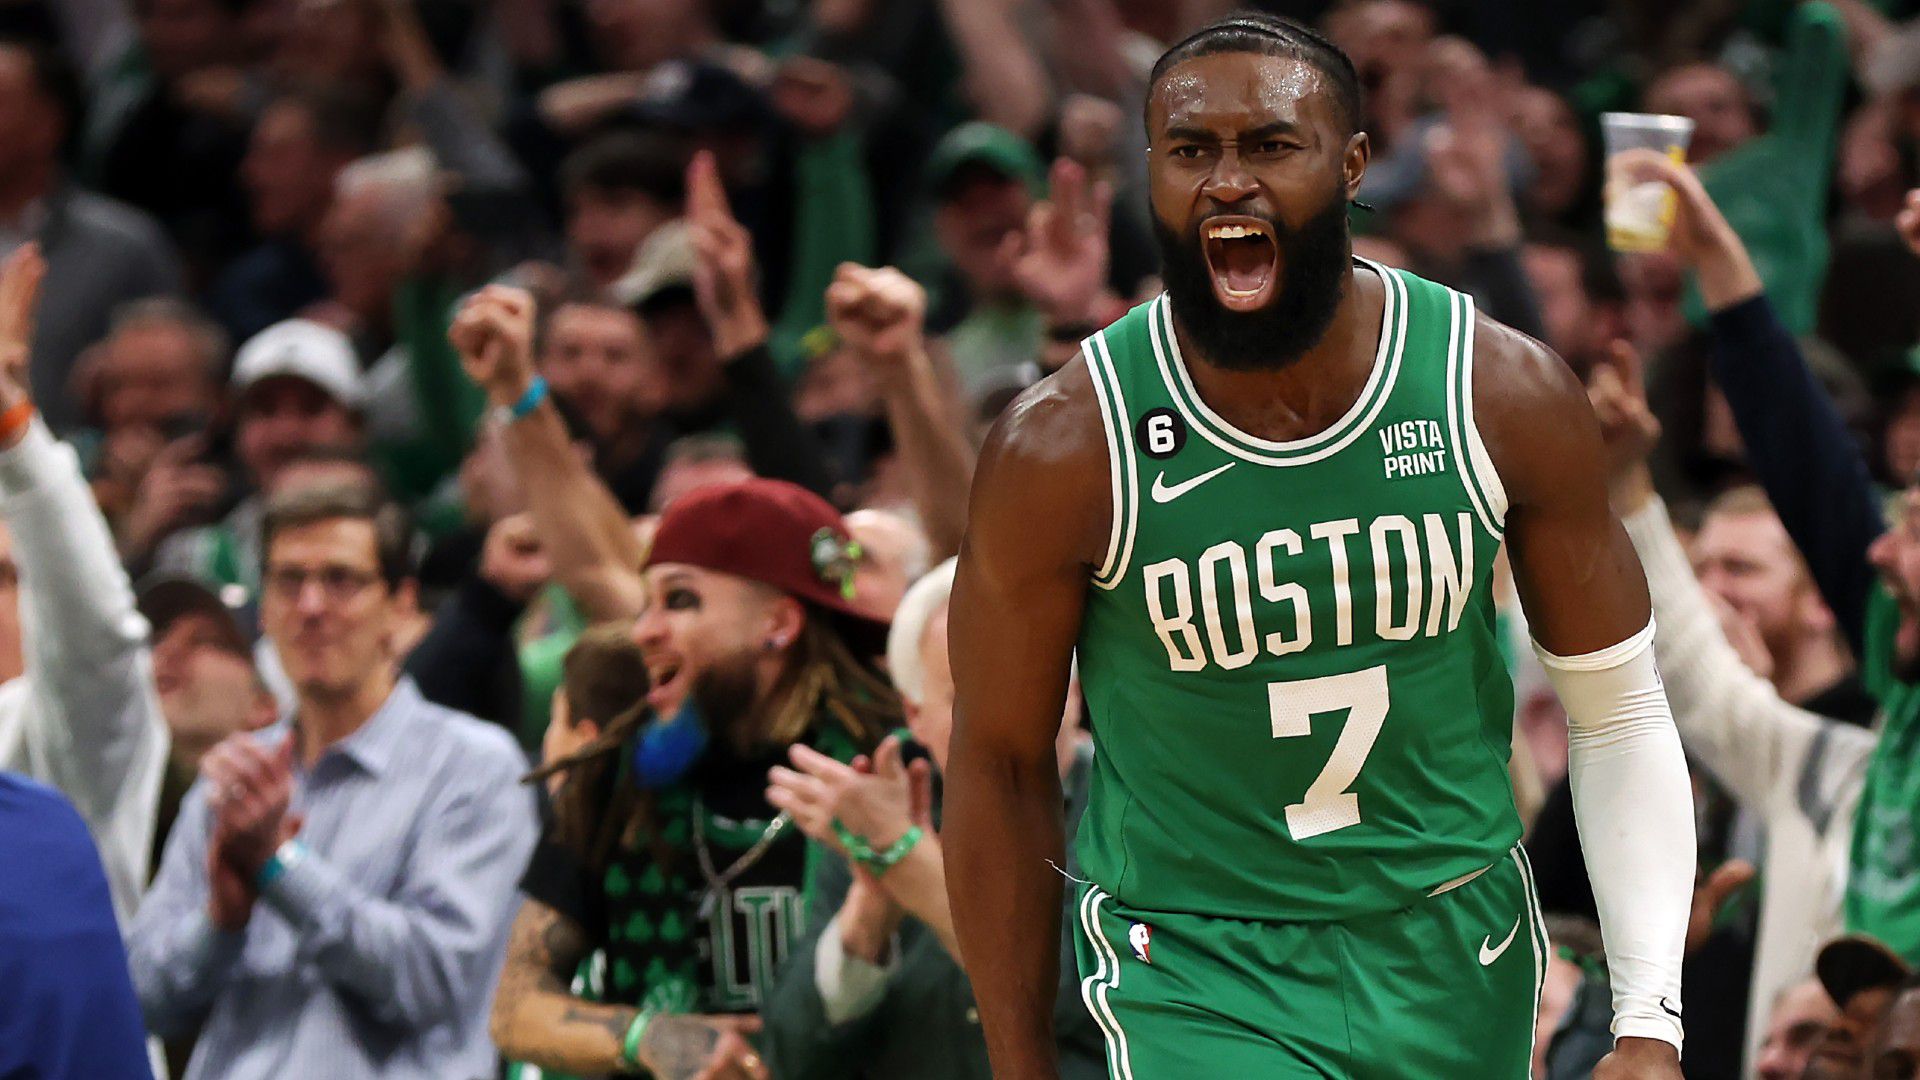 Sorozatban kilencedszer nyert, de nem lehet maradéktalanul elégedett a Celtics